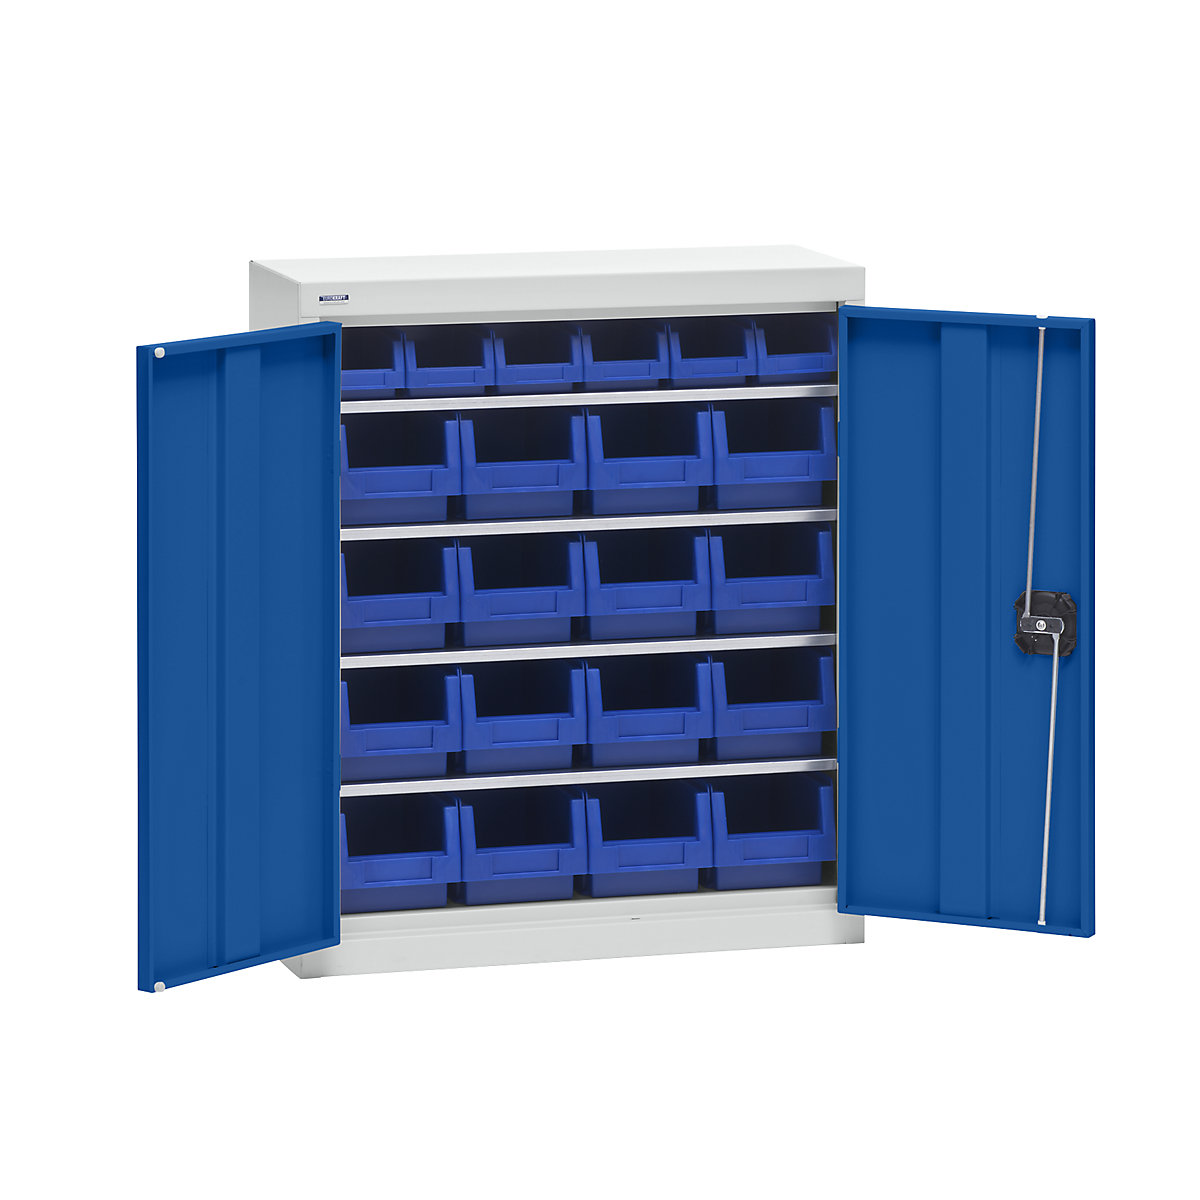 Materiaalkast met magazijnbakken – eurokraft pro, hoogte 780 mm, 4 legborden, lichtgrijs / gentiaanblauw-4